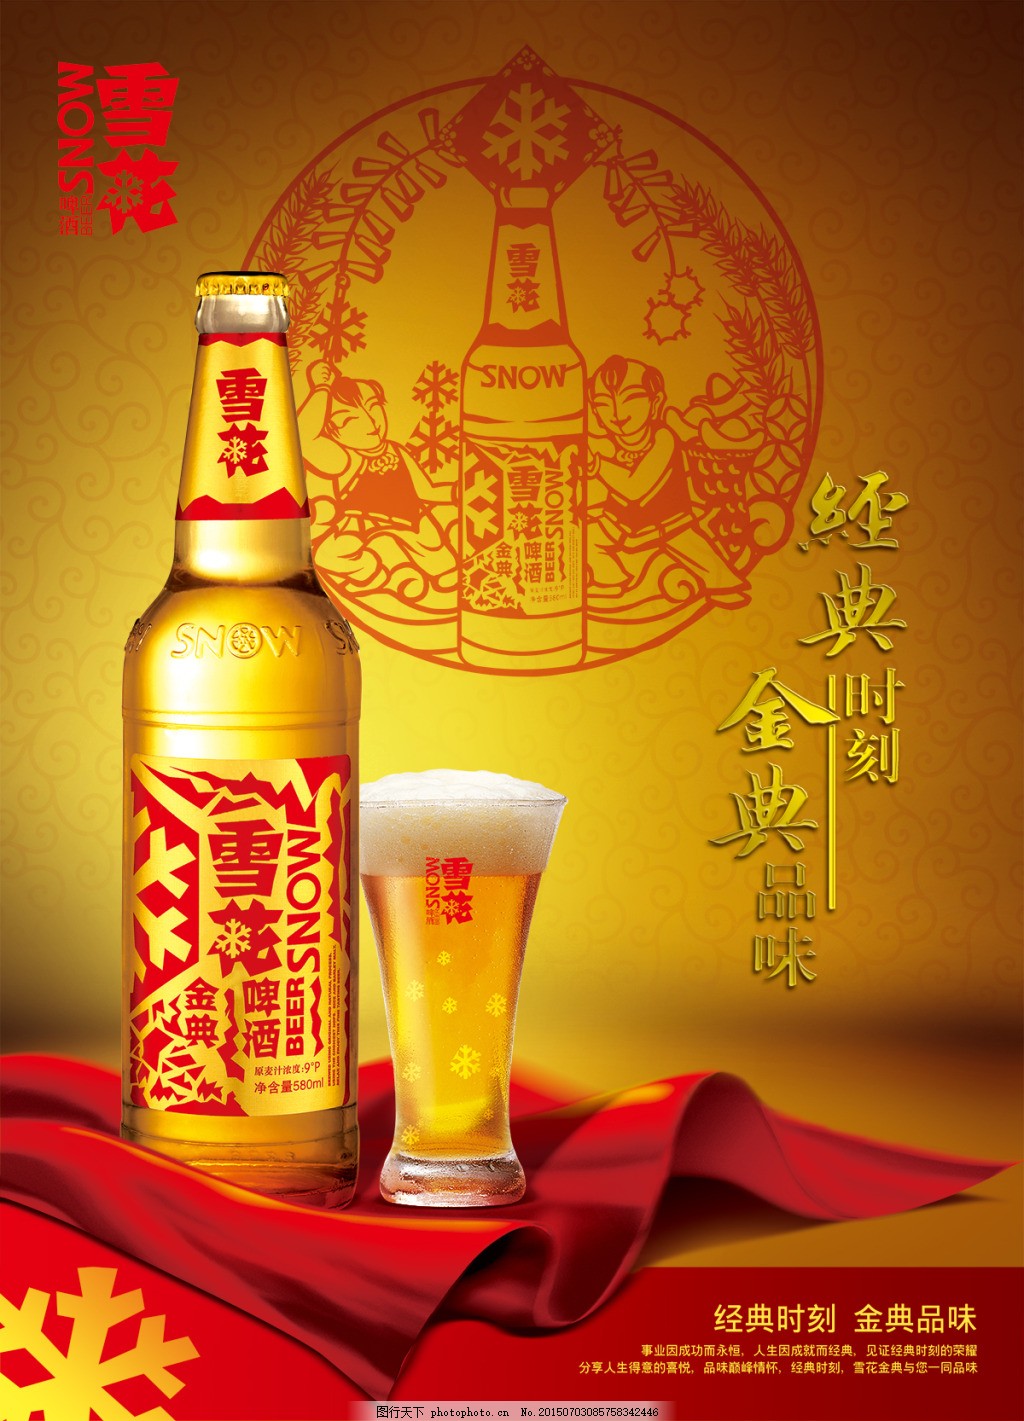 主打“有你文化”燕京啤酒“彩盖营销”快速出圈 - 中国日报网